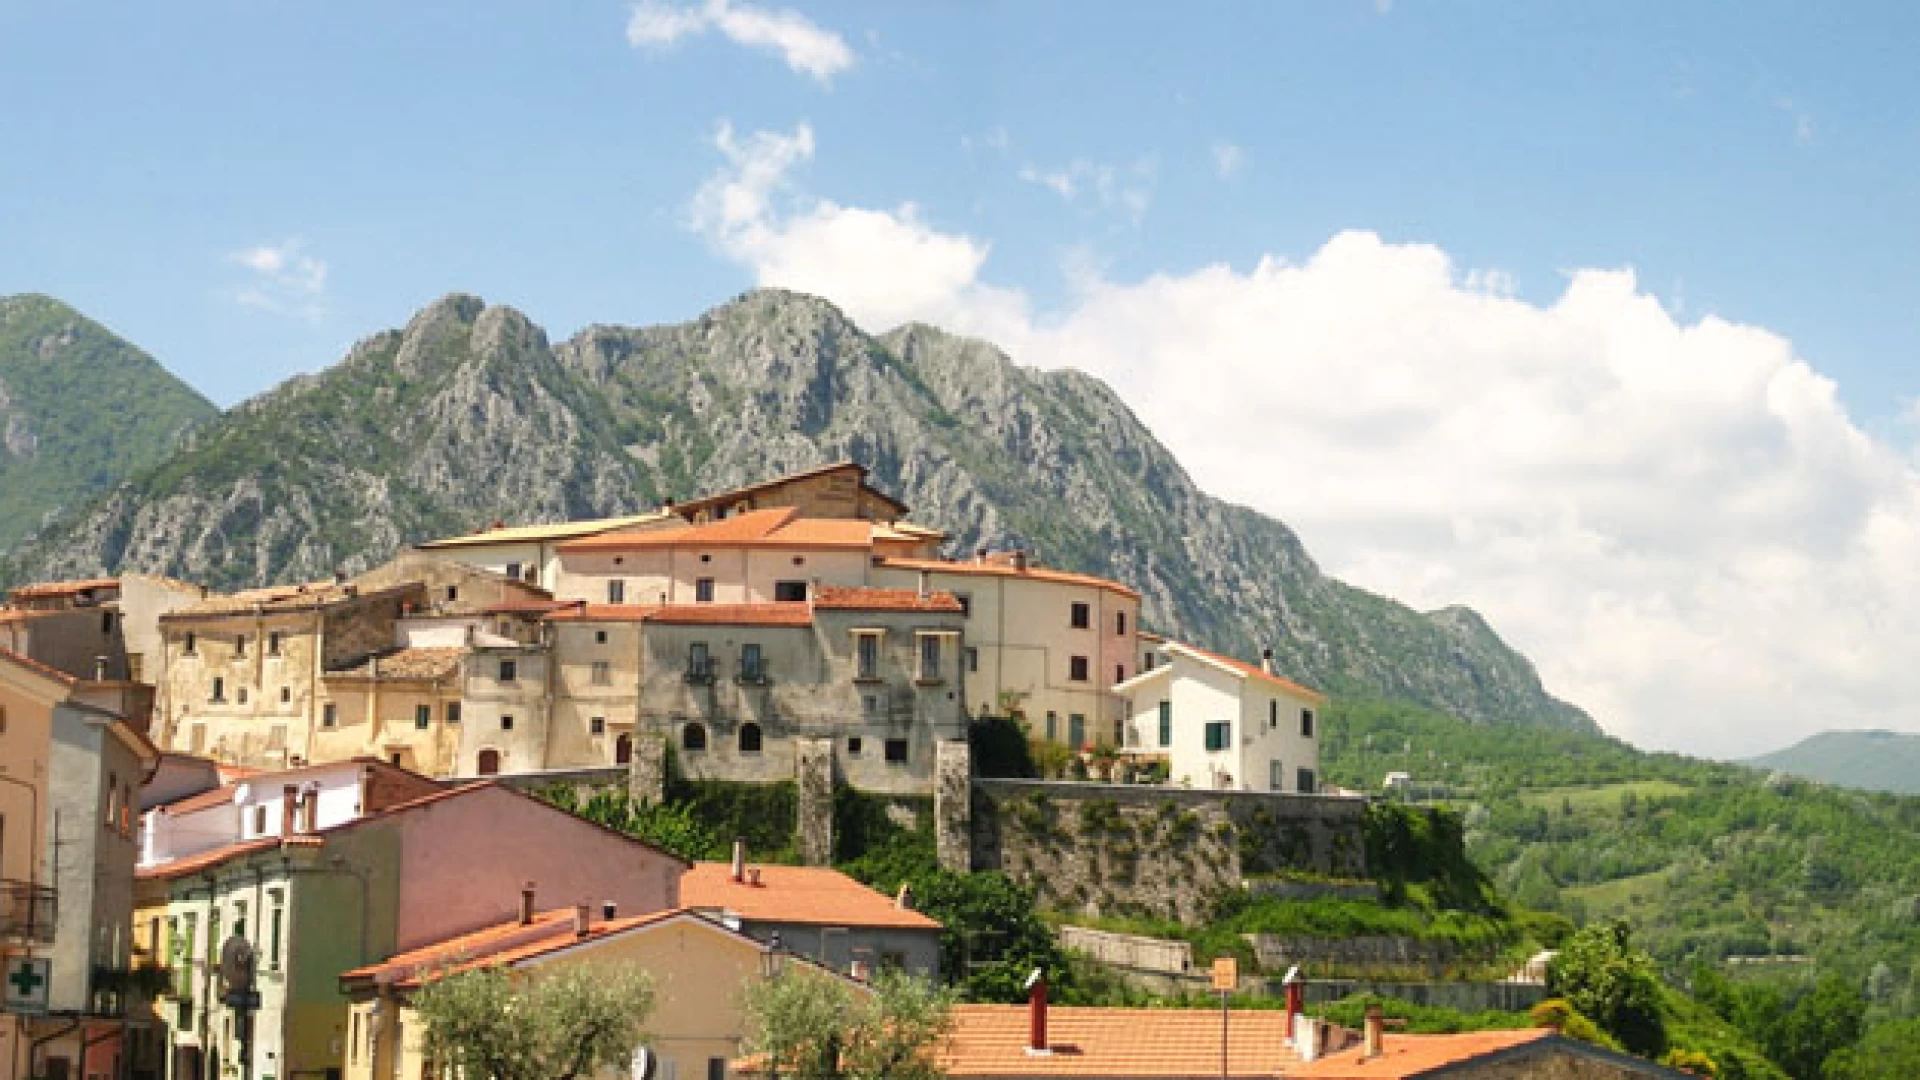 Scapoli inserito nella classifica dei venti paese più belli d’Italia da Skyscanner, noto motore di ricerca turistico.